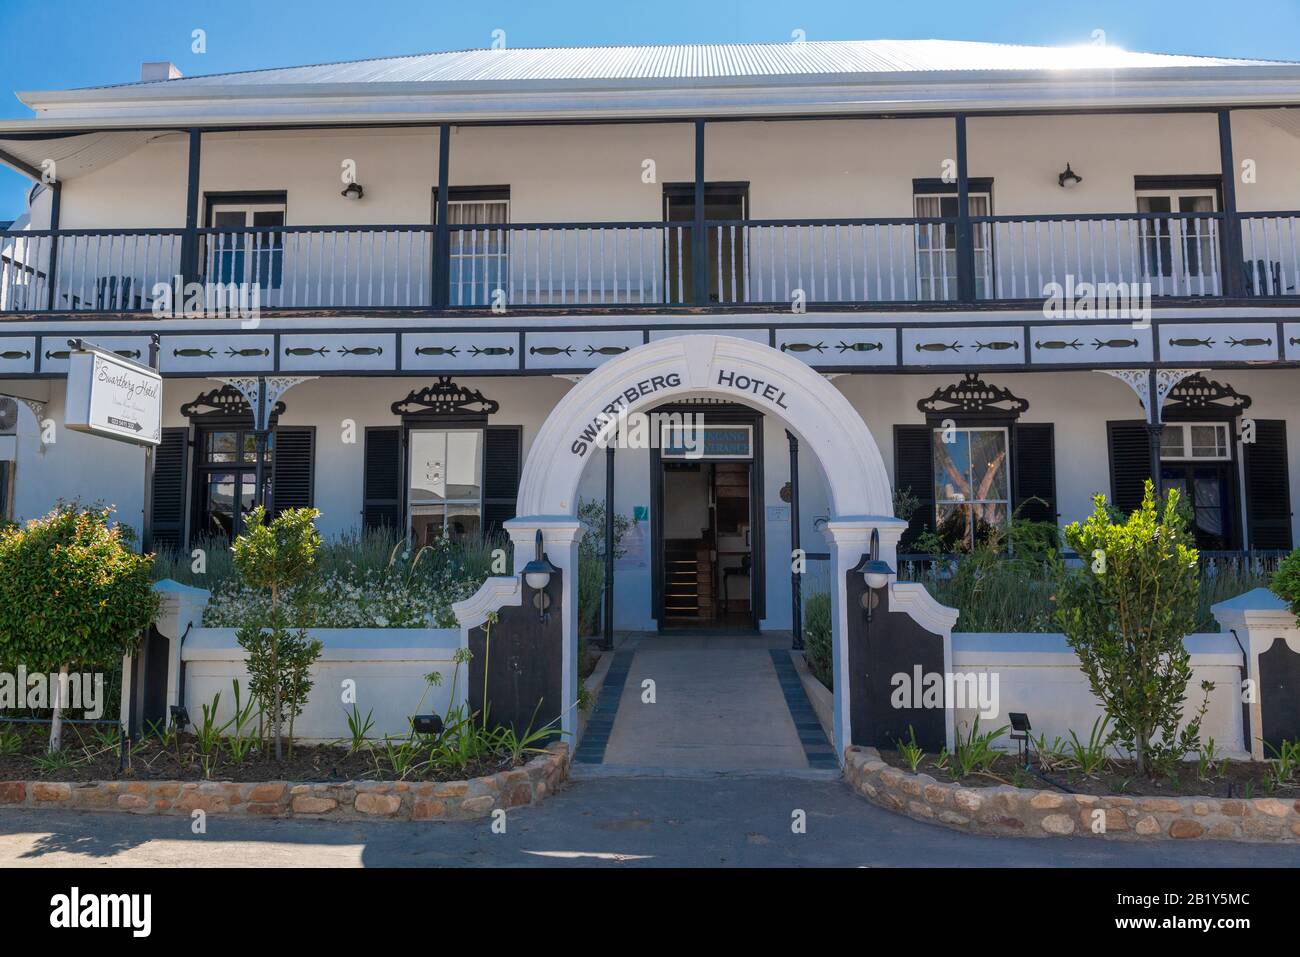 Le patrimoine Swartberg Hôtel situé dans la ville de Prince Albert au pied des montagnes Swartberg, le Cap occidental, Afrique du Sud Banque D'Images